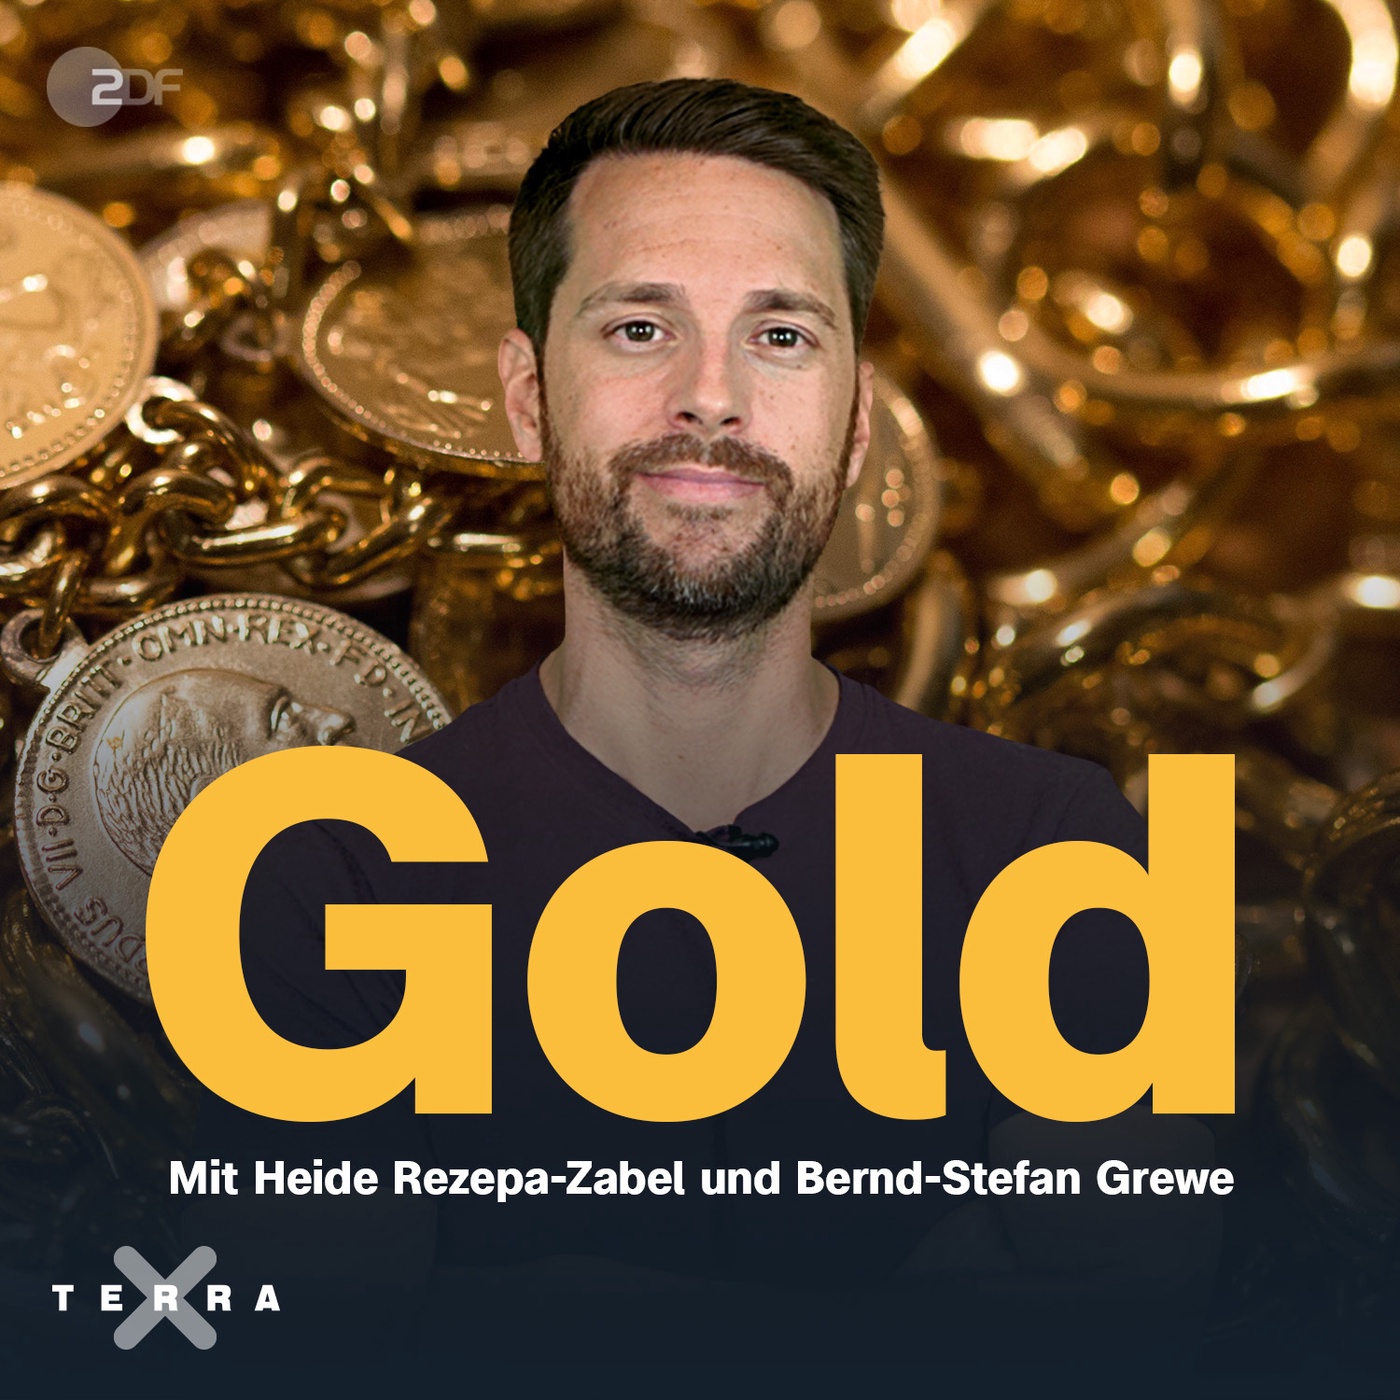 Gold: Eine Geschichte von Macht und Reichtum.